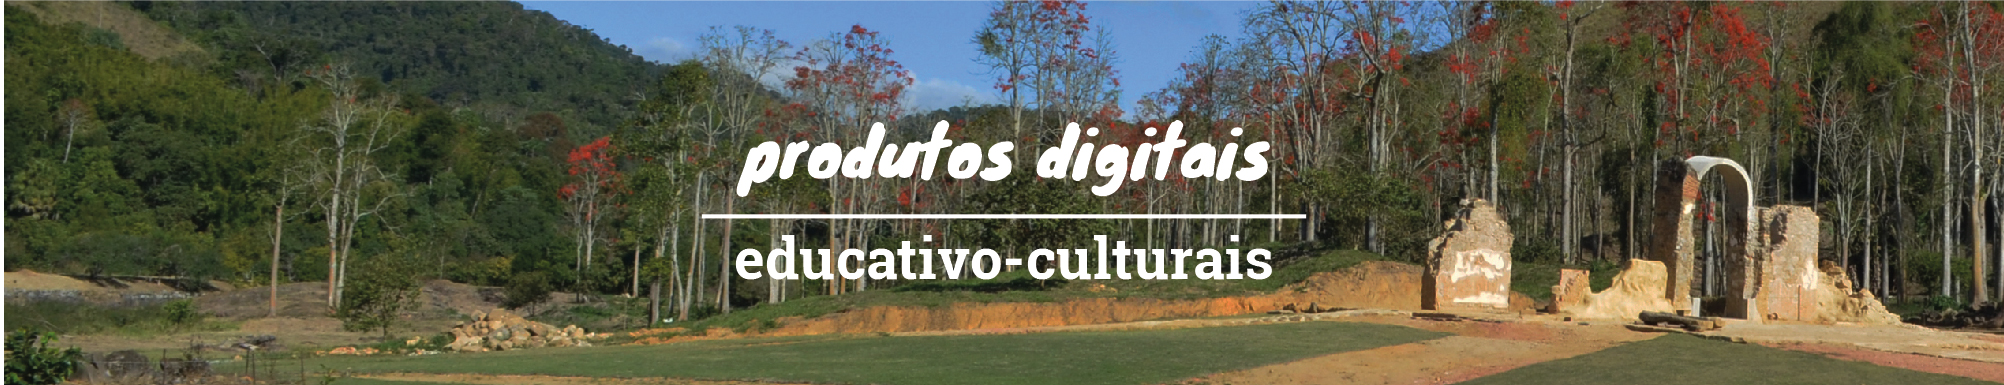 Produtos Culturais Educativo-Culturais